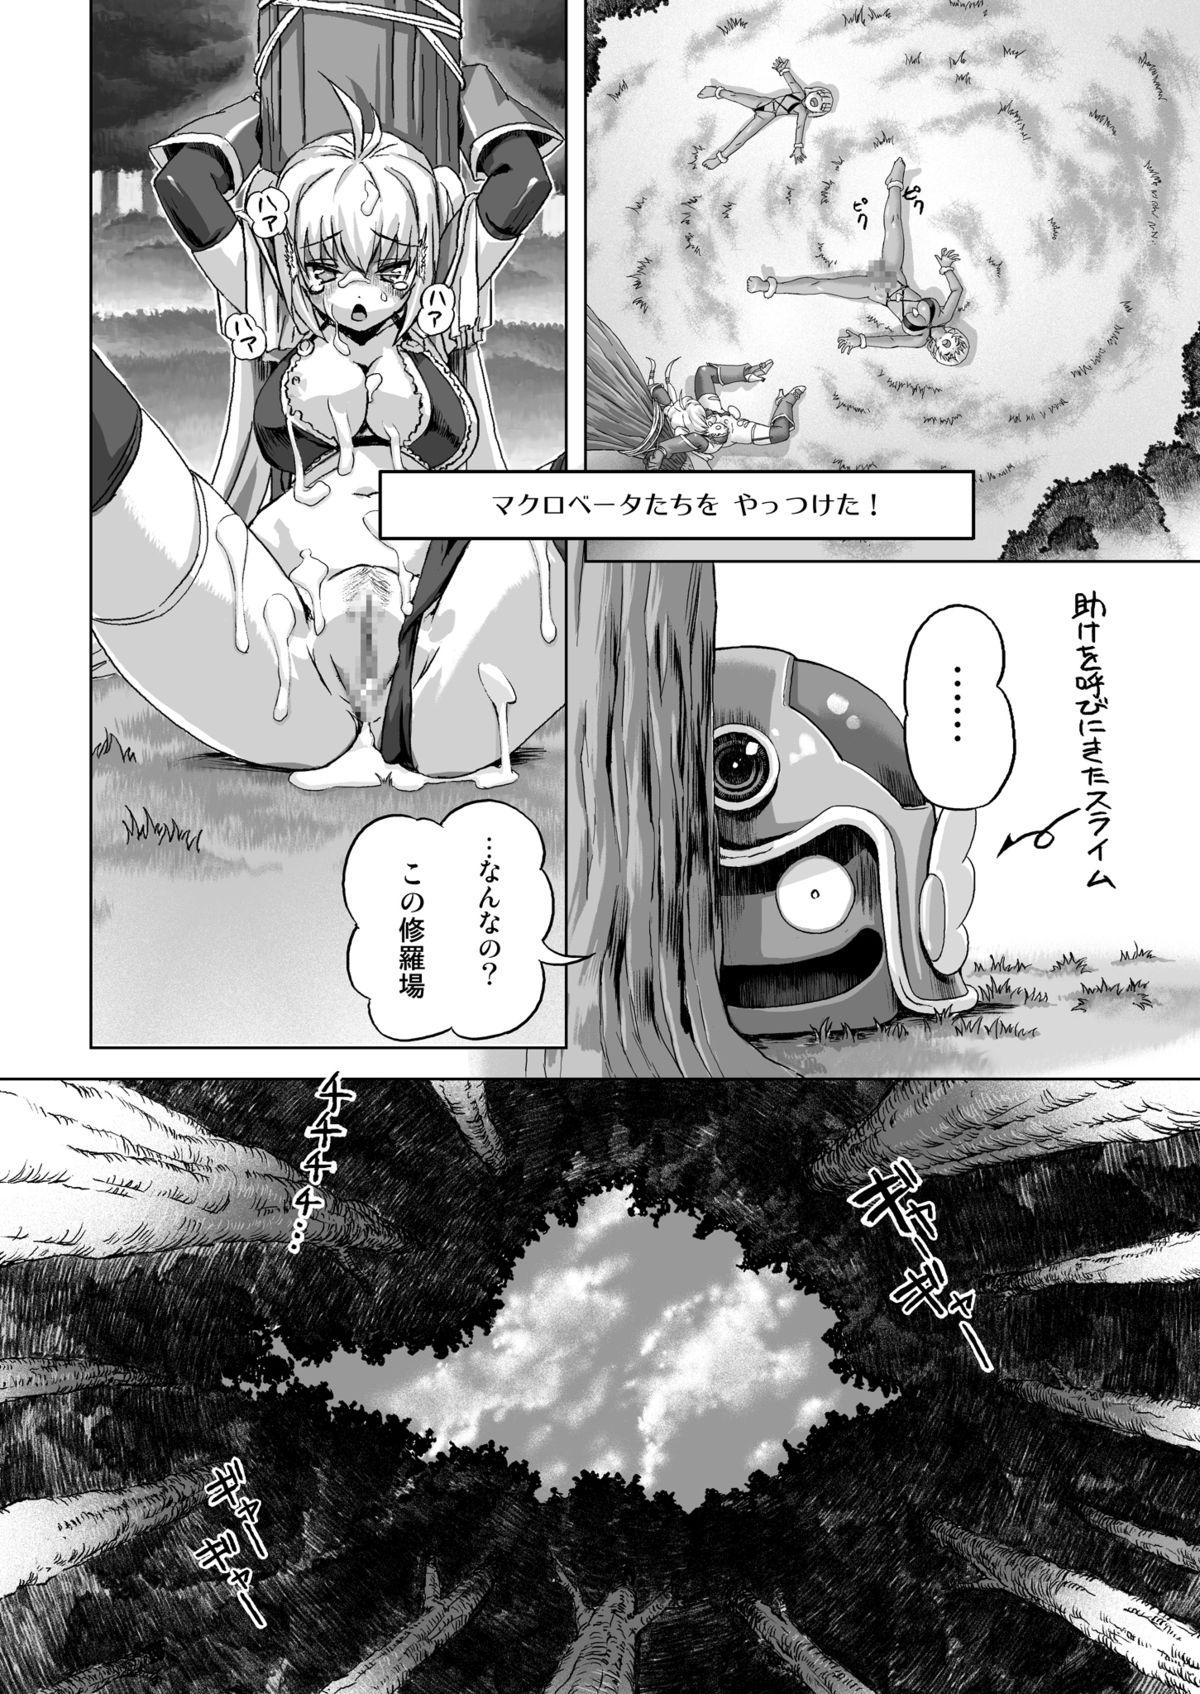 Office Zoku Senshi vs. - Dragon quest iii Blow - Page 22